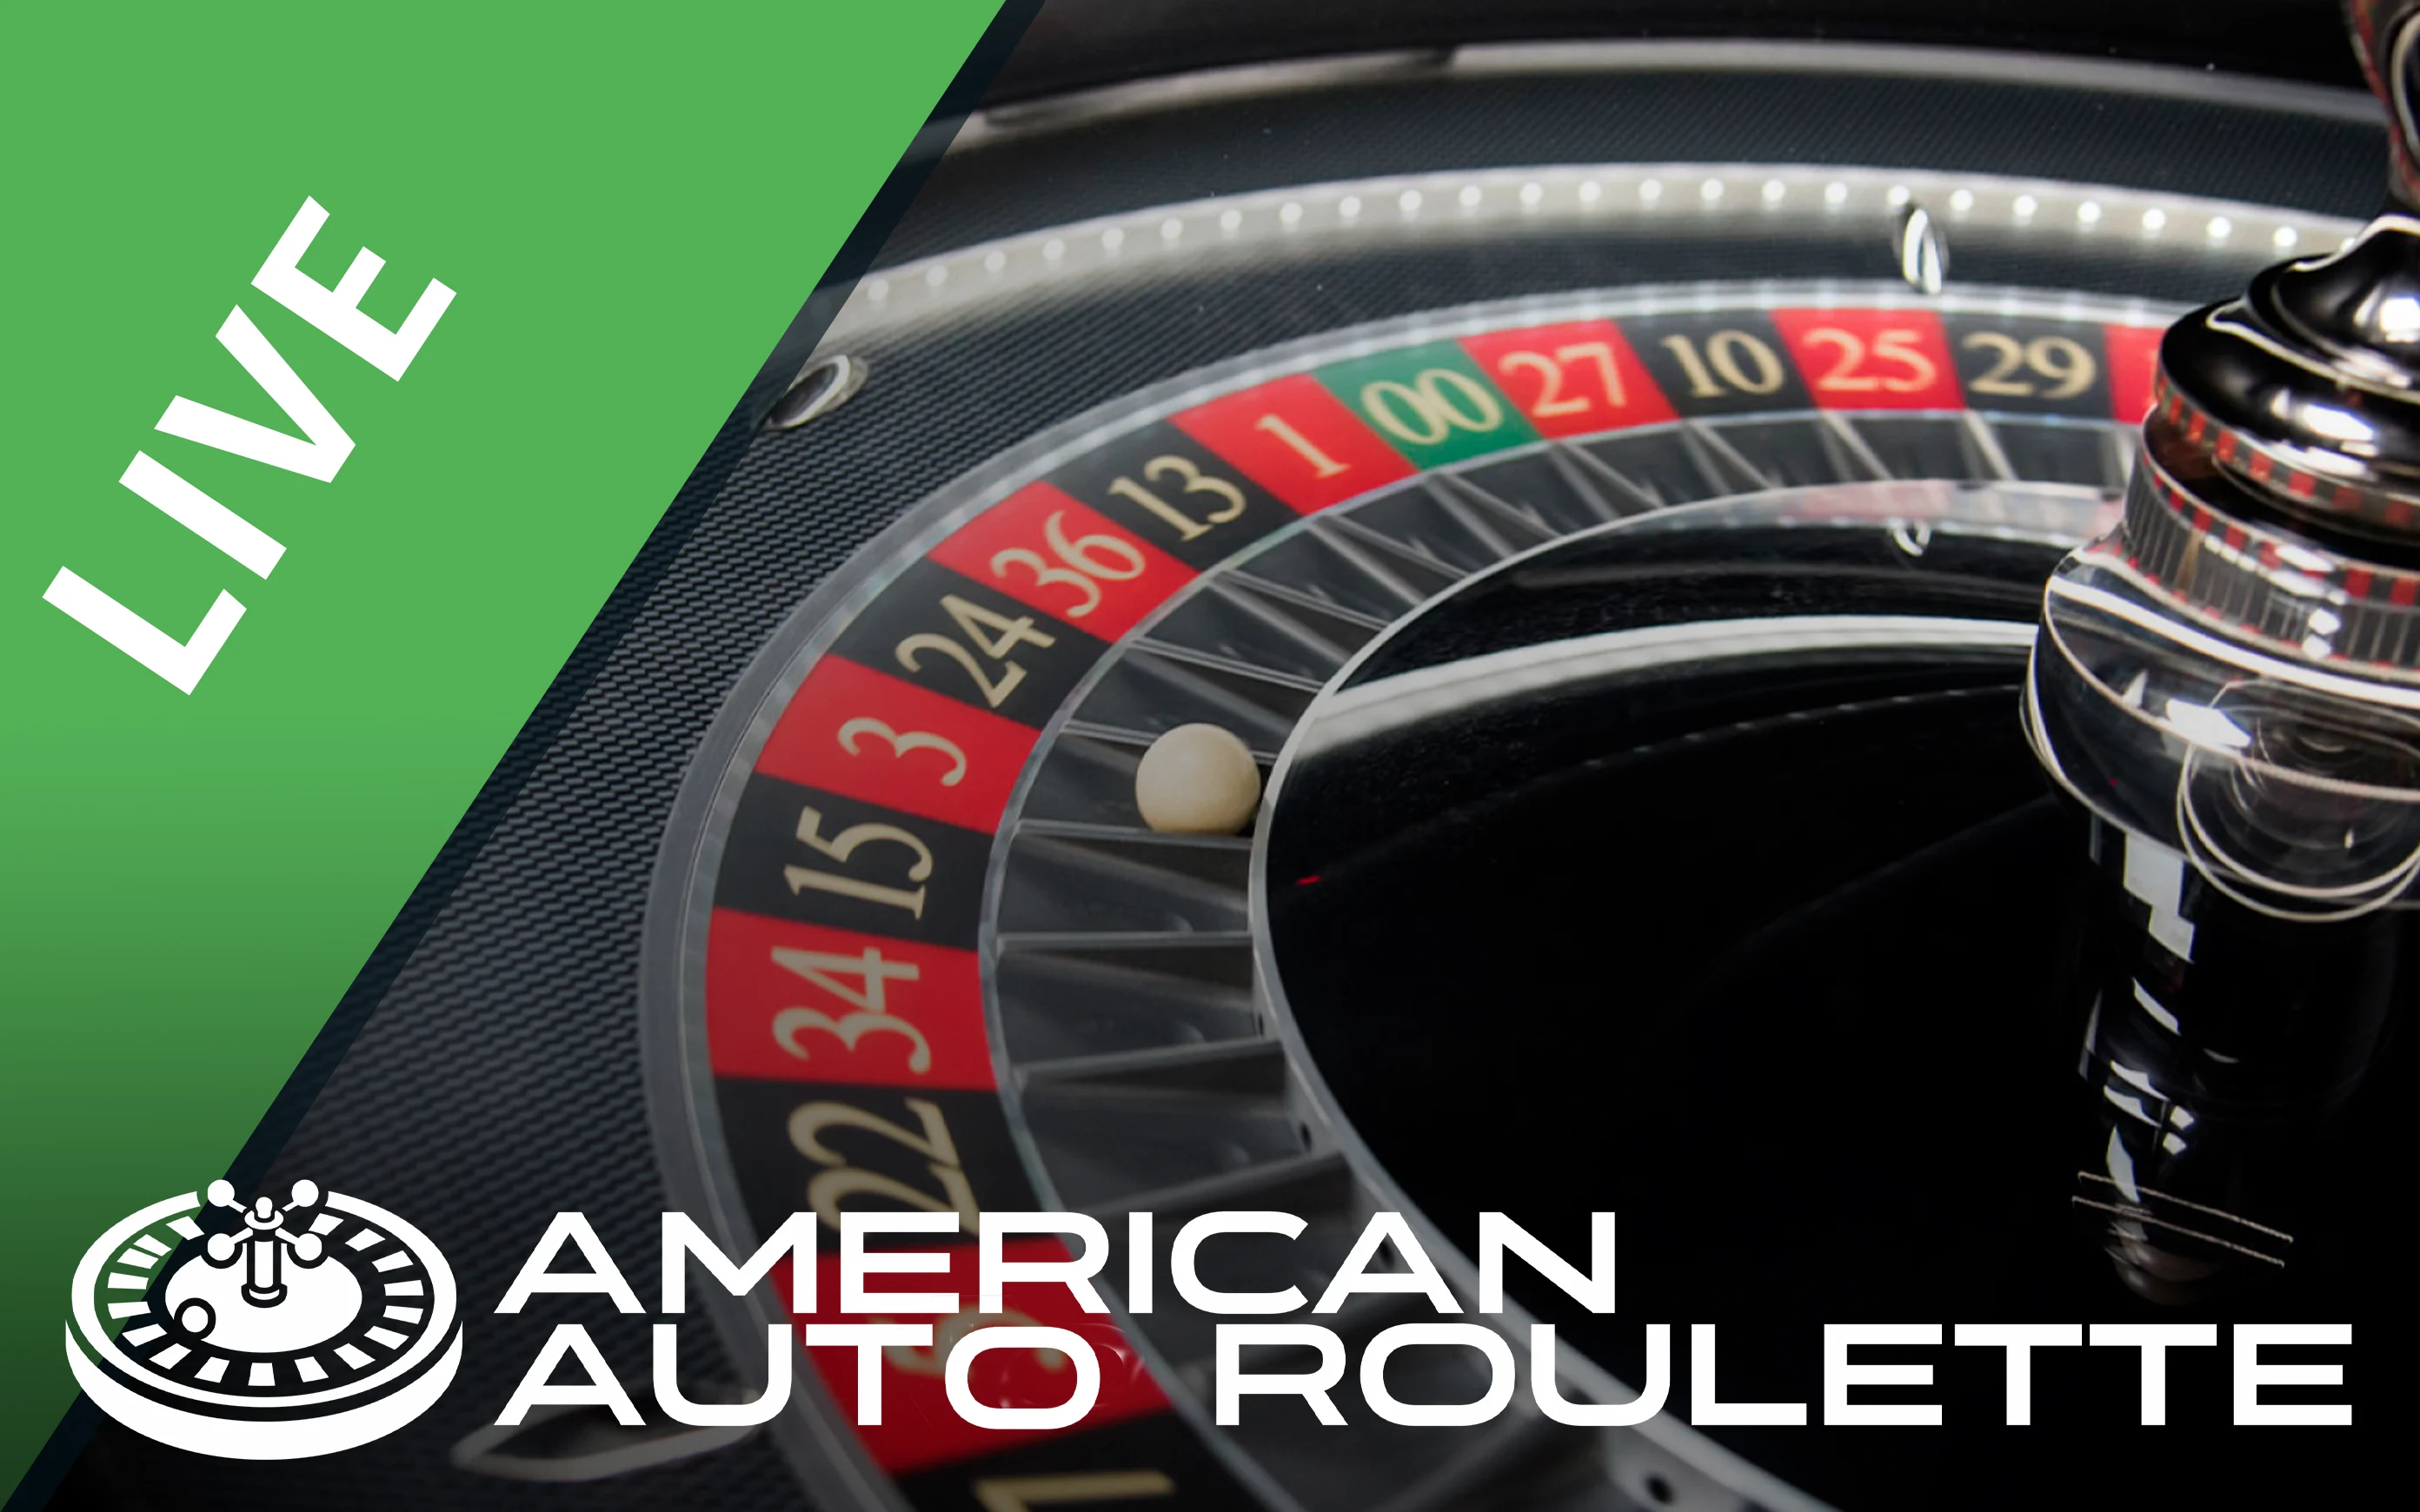 Chơi American Auto Roulette trên sòng bạc trực tuyến Starcasino.be